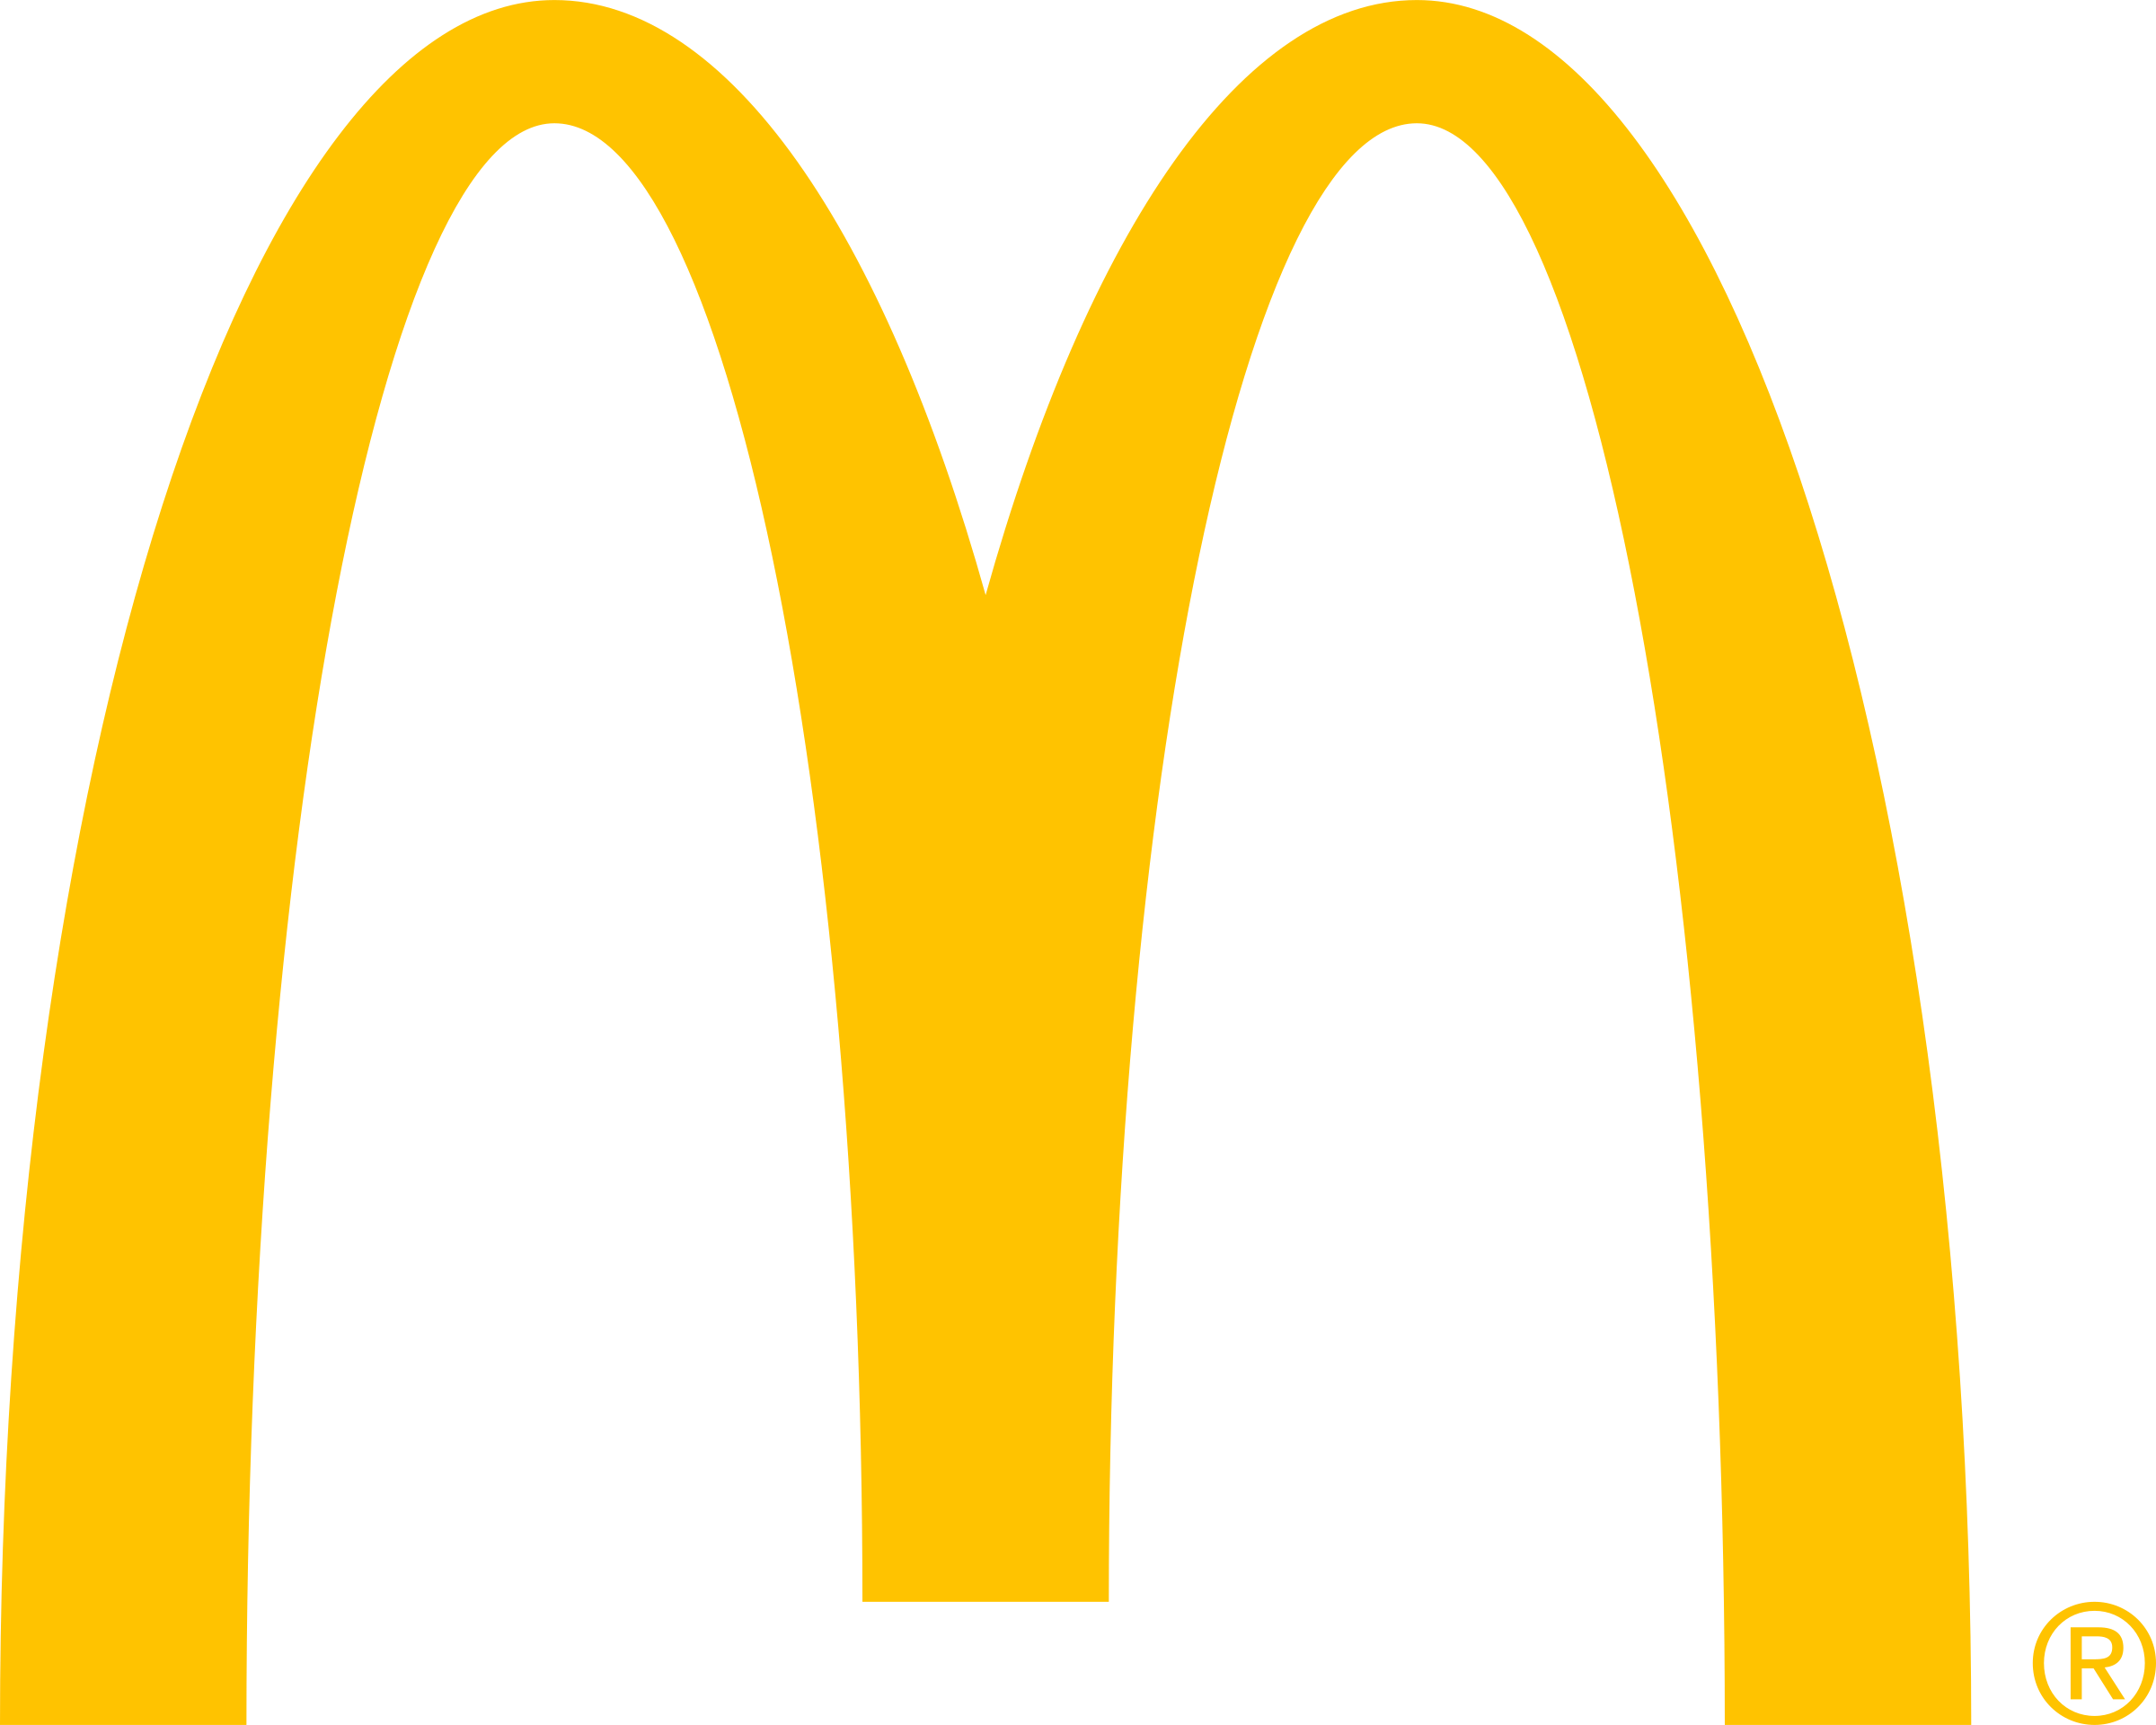 McDonald’s Logo Transparent Image